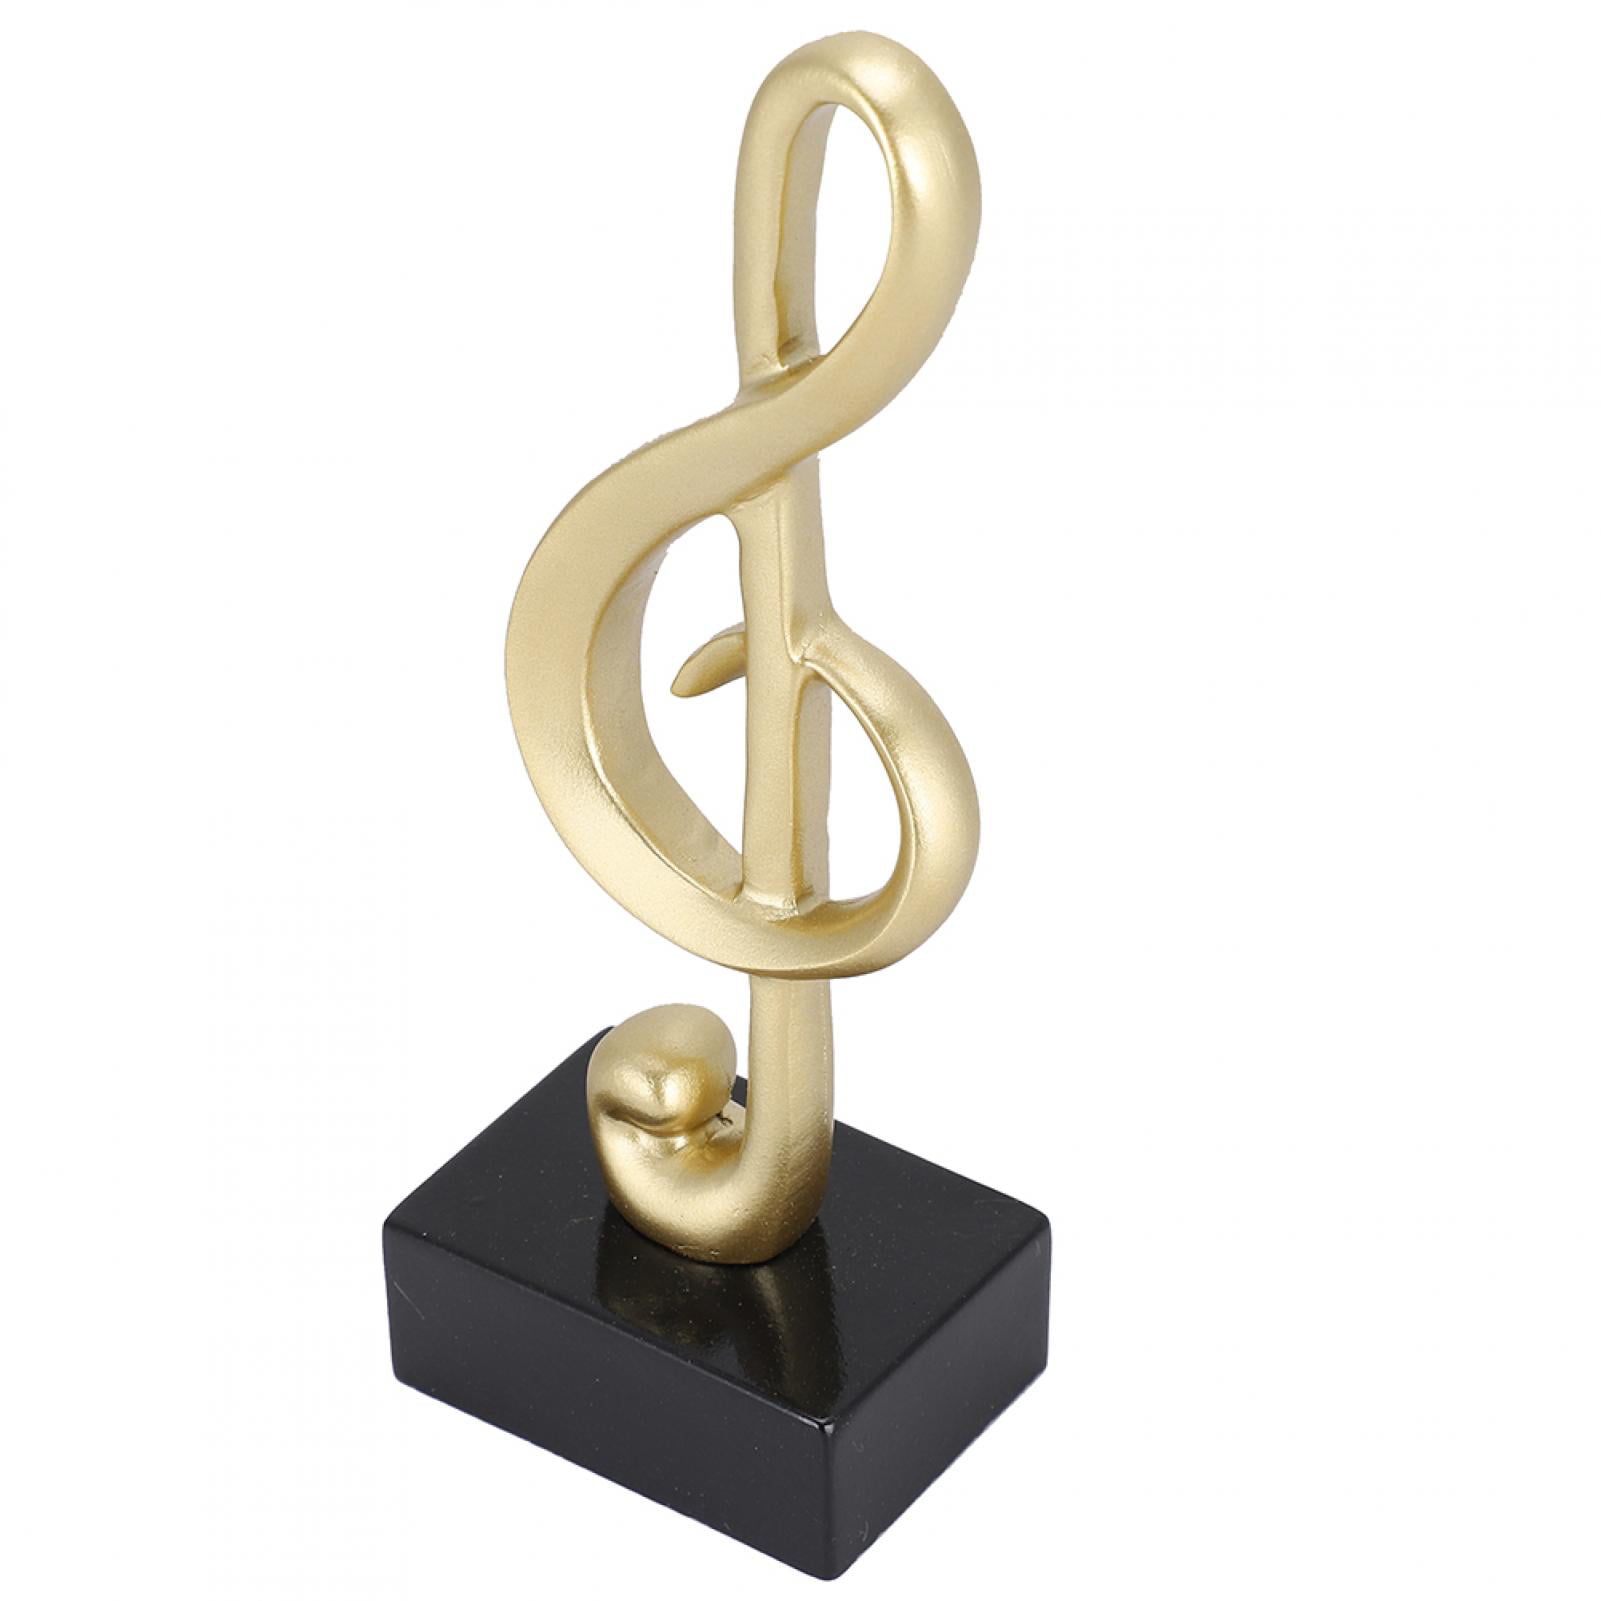 Resin Craft Musical Notes Sculpture Home Desktop Ornament Modern Abstract Statue 